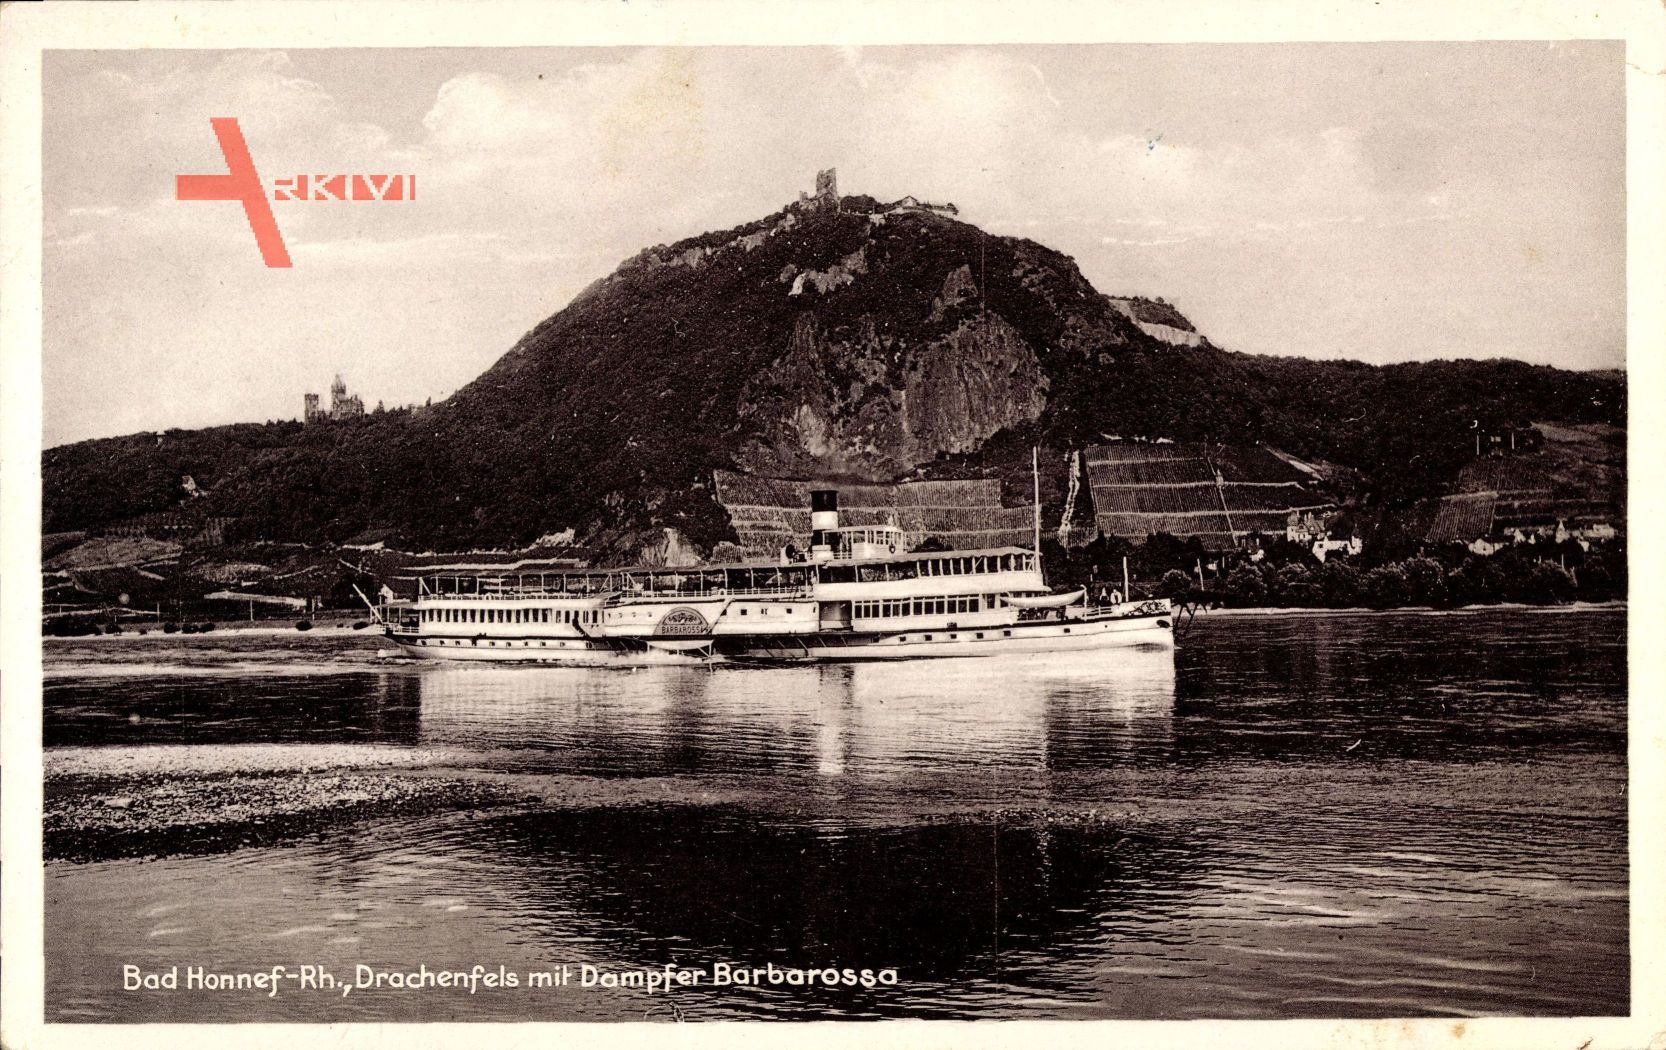 Bad Honnef im Rhein Sieg Kreis, Drachenfels mit Dampfer Barbarossa